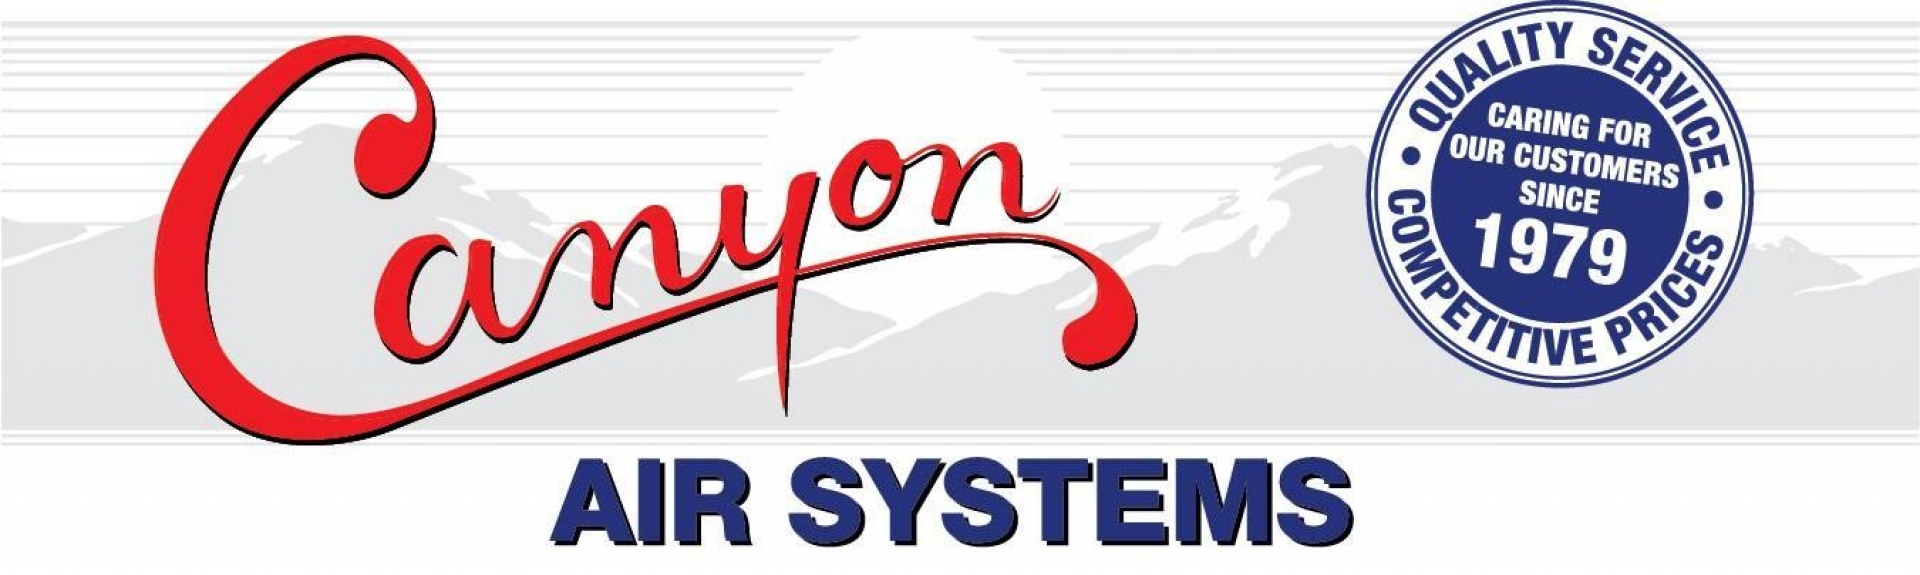 Canyon Air Systems company logo